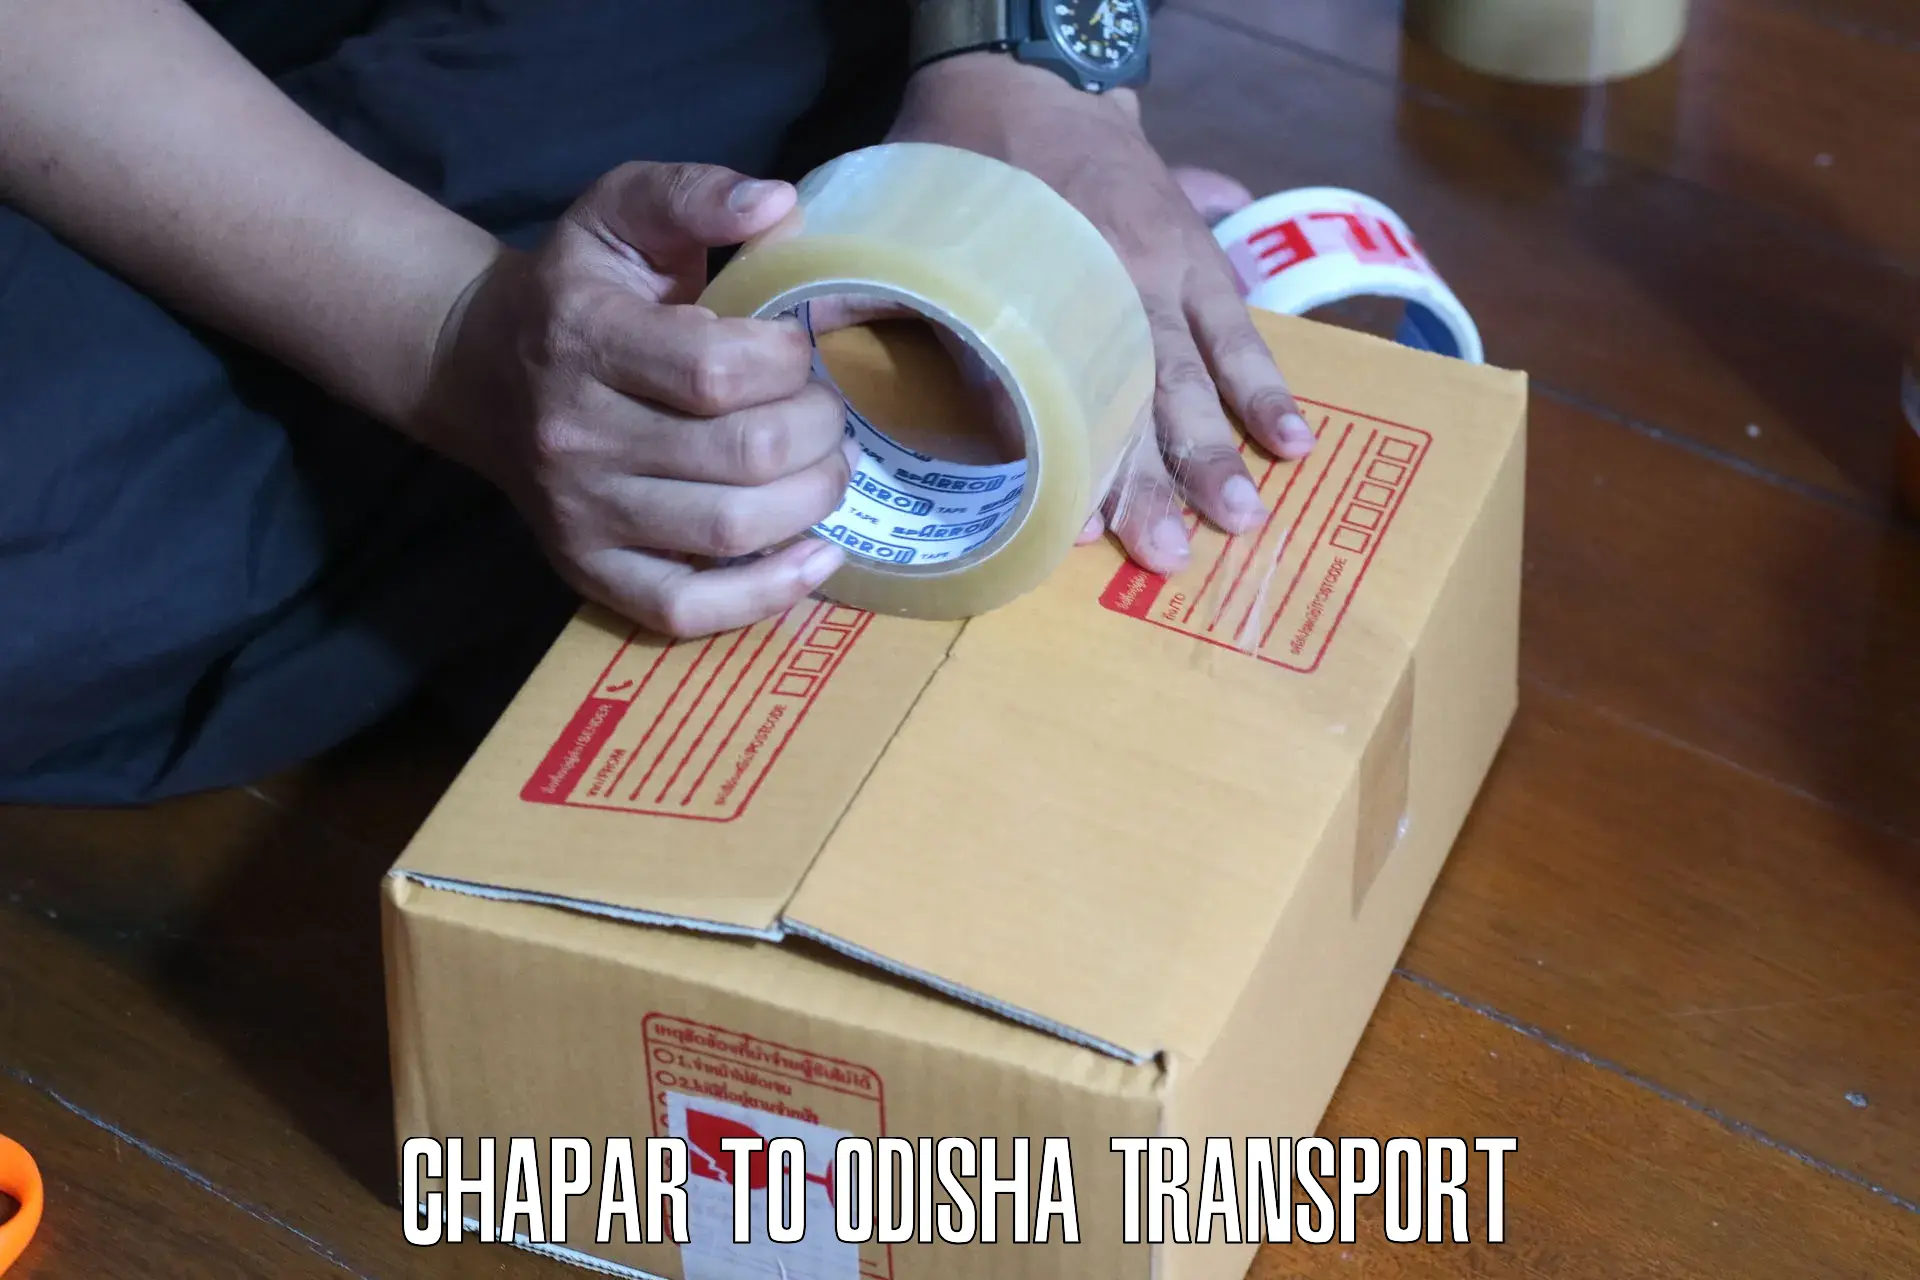 Commercial transport service Chapar to Ganjam